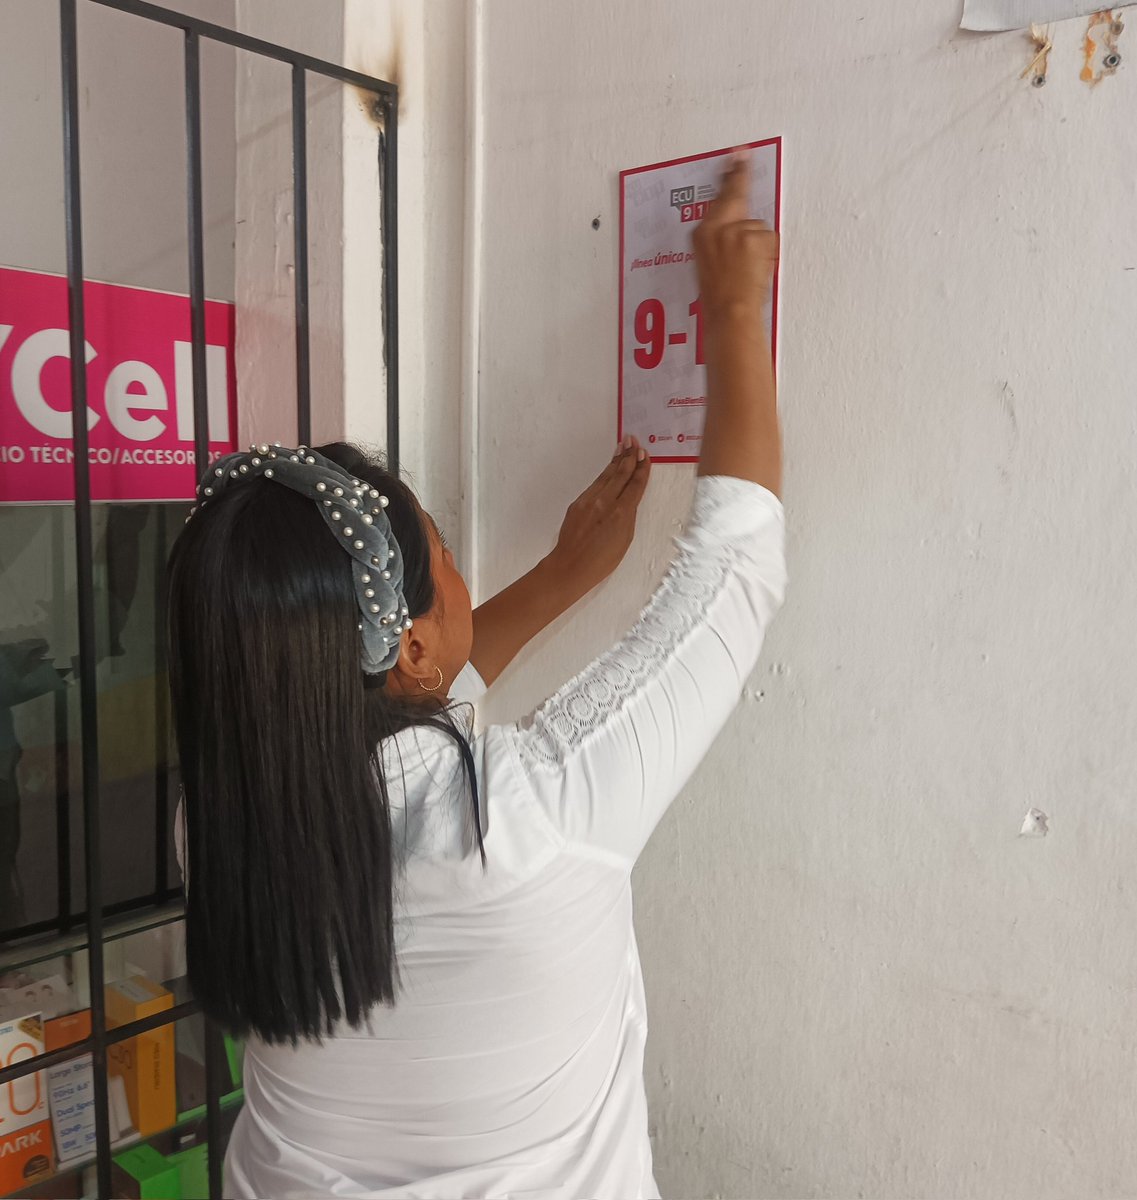 #VinculaciónECU911

Personal del #ECU911 #Babahoyo realizó la instalación de señalética oficial del número de emergencias 9️⃣ 1️⃣ 1️⃣ en locales comerciales de los cantones #Urdaneta, #Vinces y #Baba en la provincia de Los Ríos.

#ECU911SomosTodos